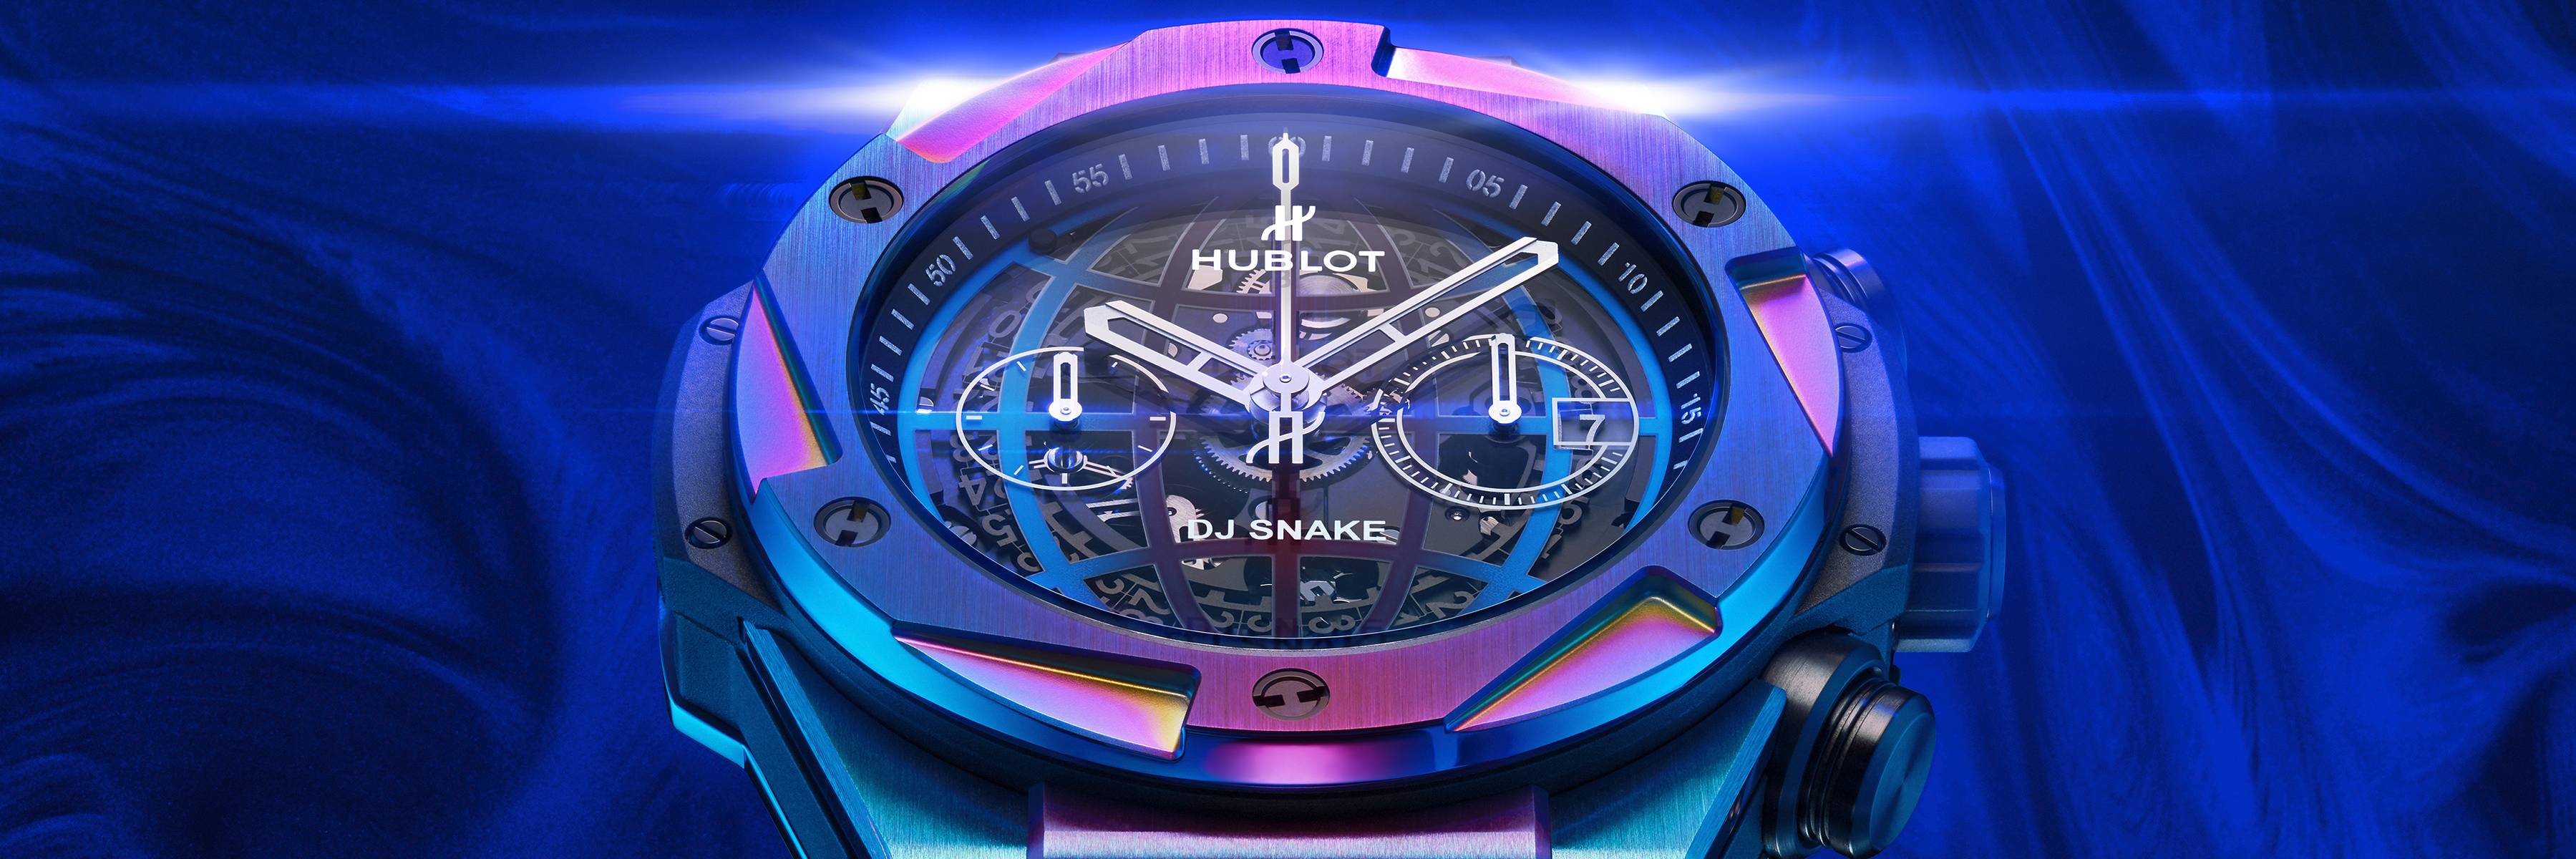 Hublot Big Bang DJ Snake watch